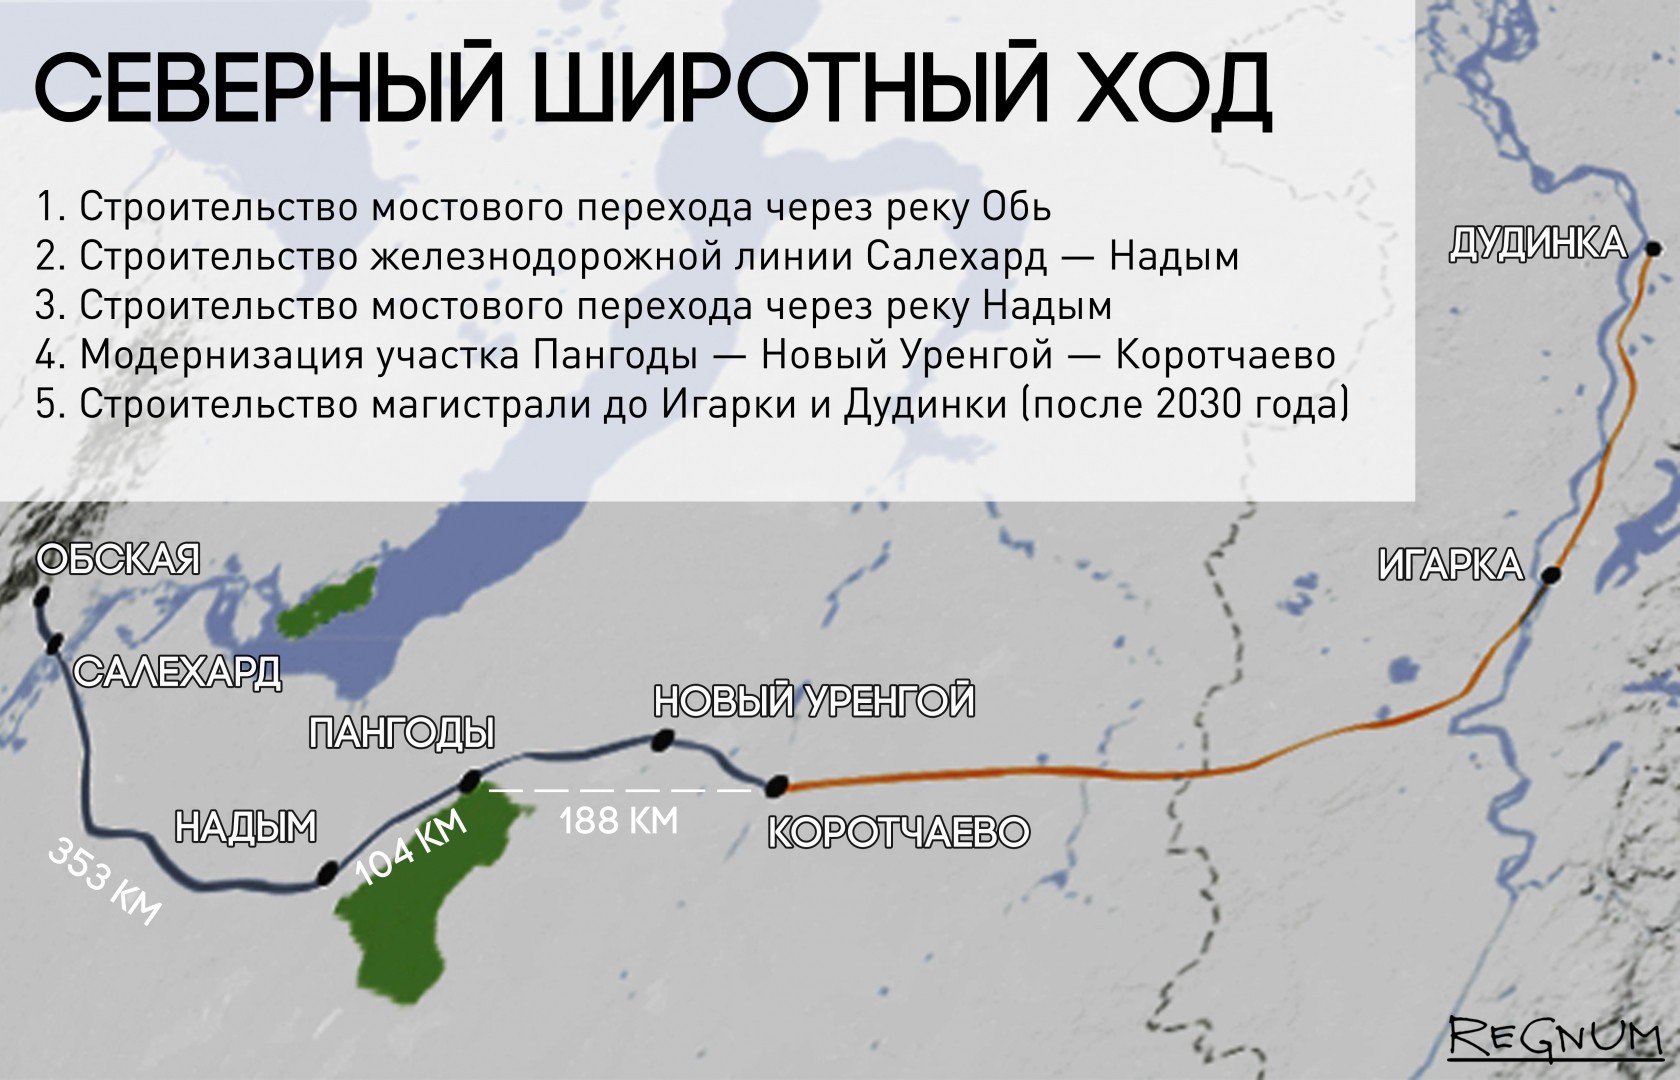 Схема железной дороги Северный широтный ход